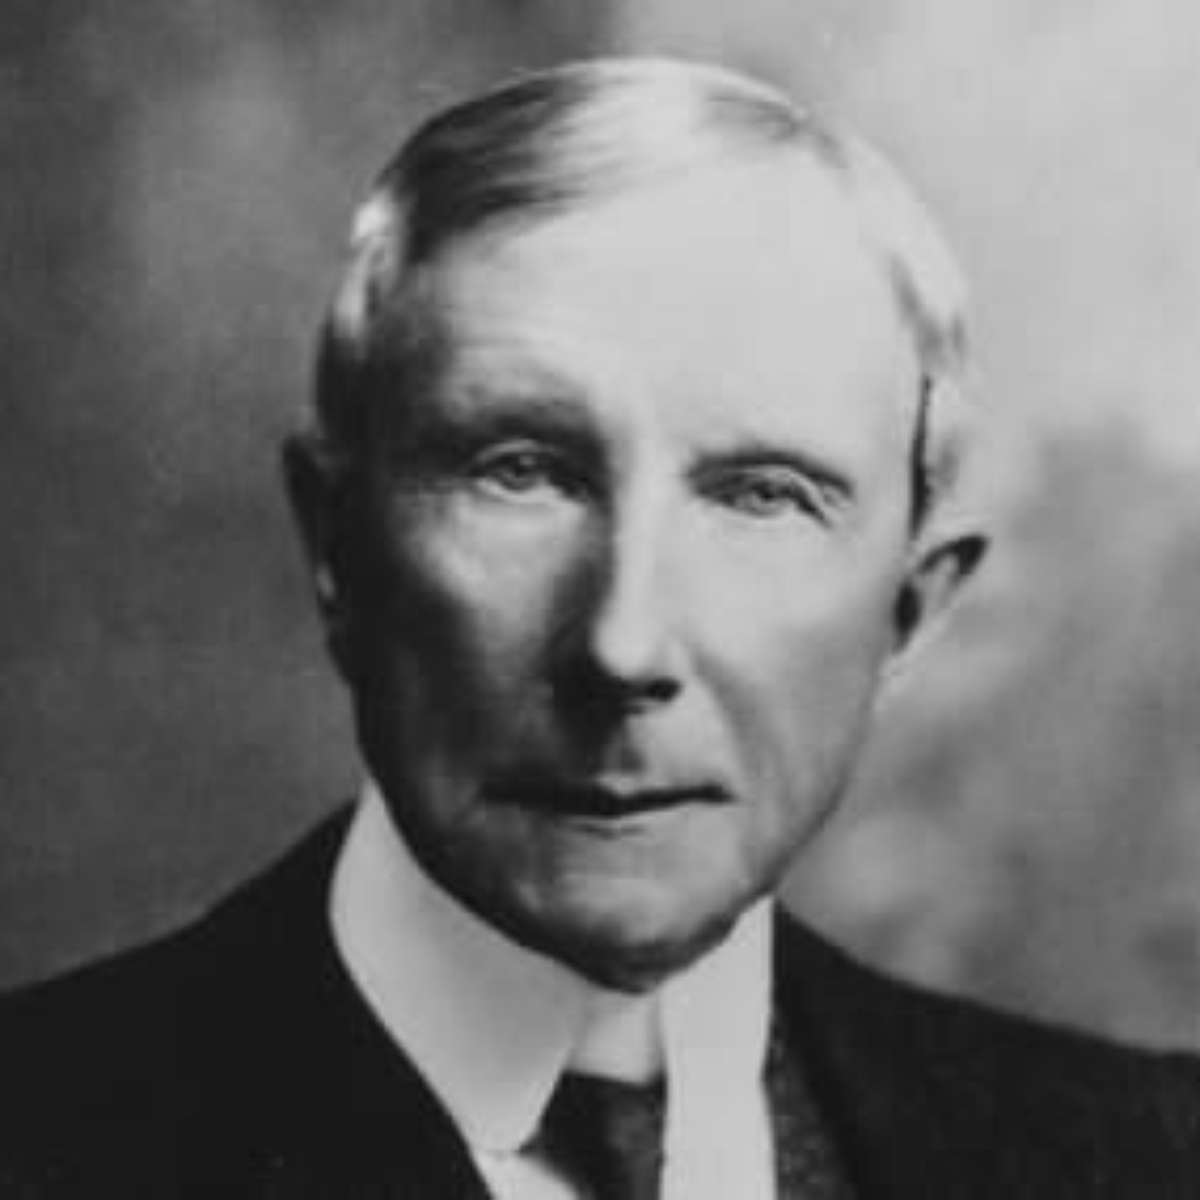 Magnata do petróleo, John D. Rockefeller fundou uma dinastia - Money Report